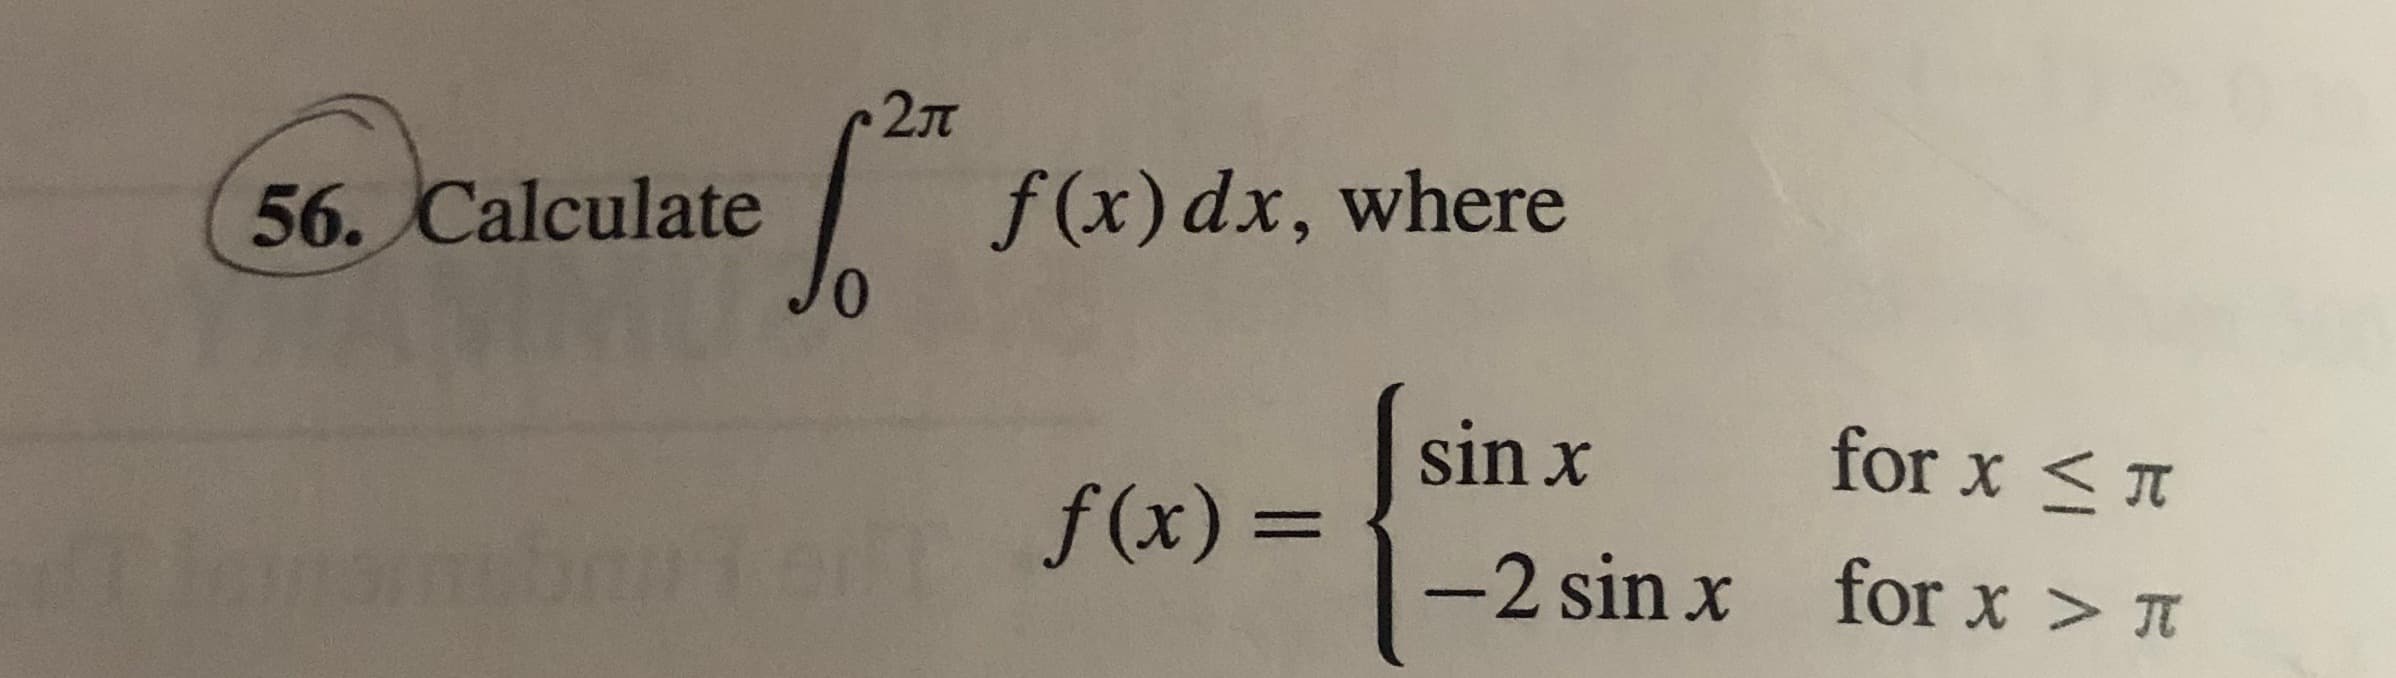 27T
f(x) dx, where
0,
56. Calculate
sin x
for x <
f(x) =
-2 sin x for x > A
